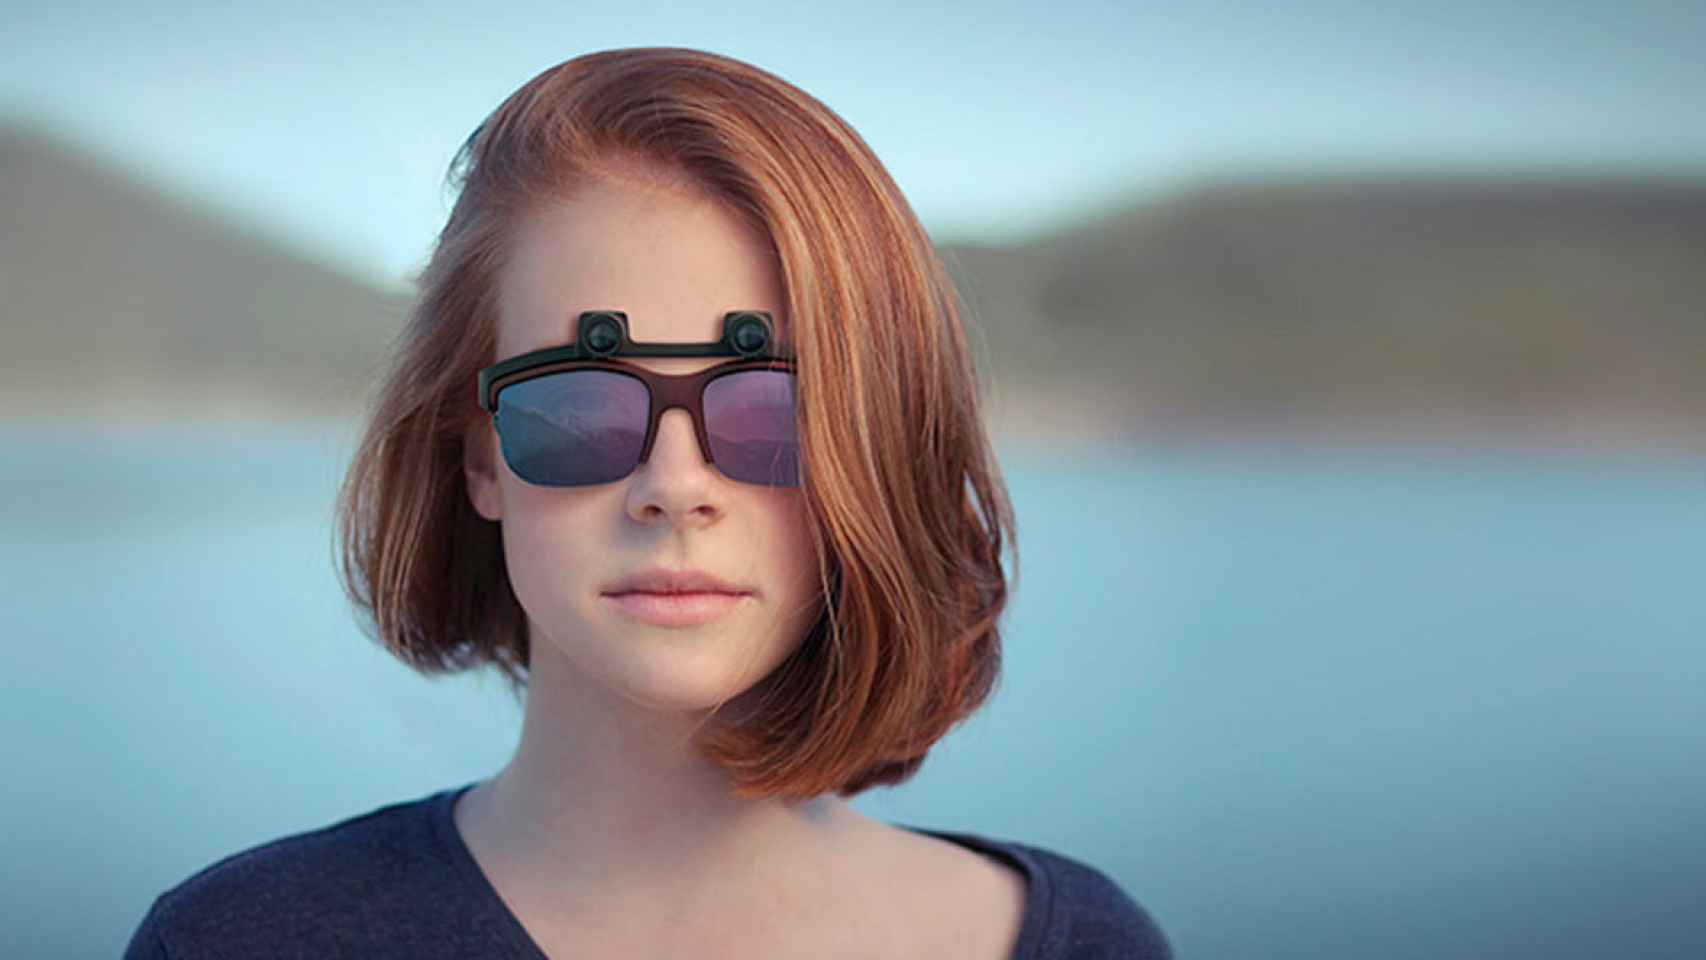 Industrial Marcado Hermana Las gafas para ciegos que transforman lo que te rodea en sonido